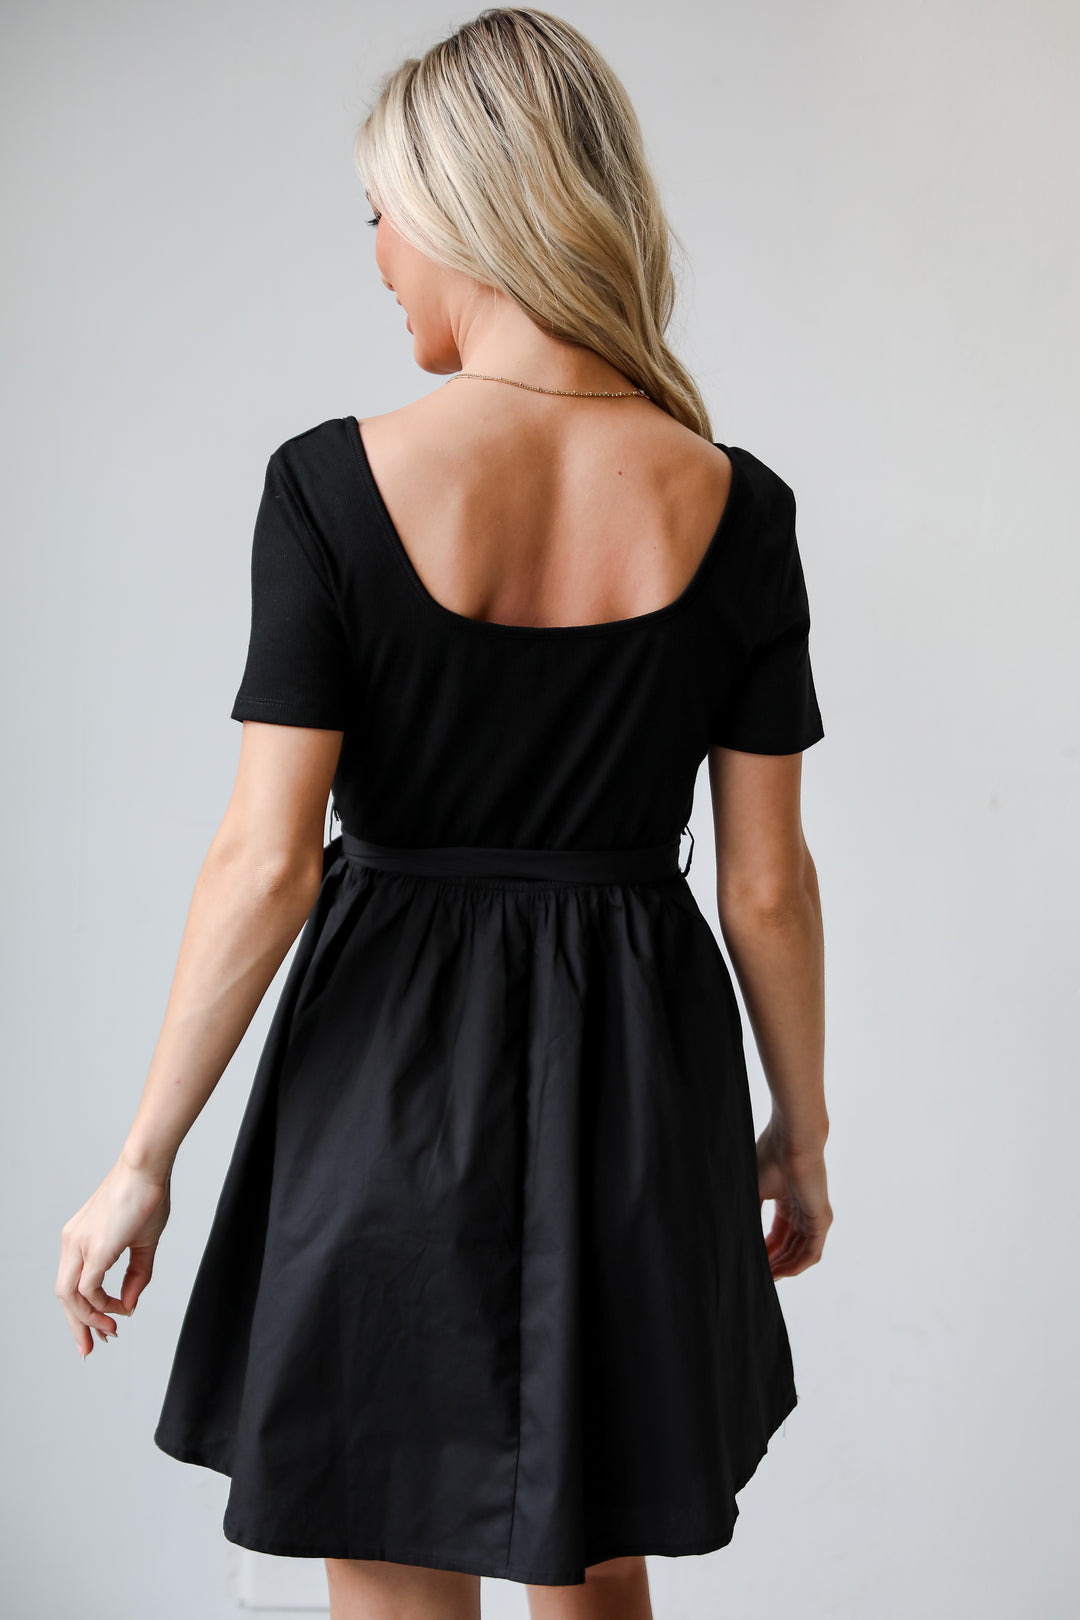 cute black dresses for women